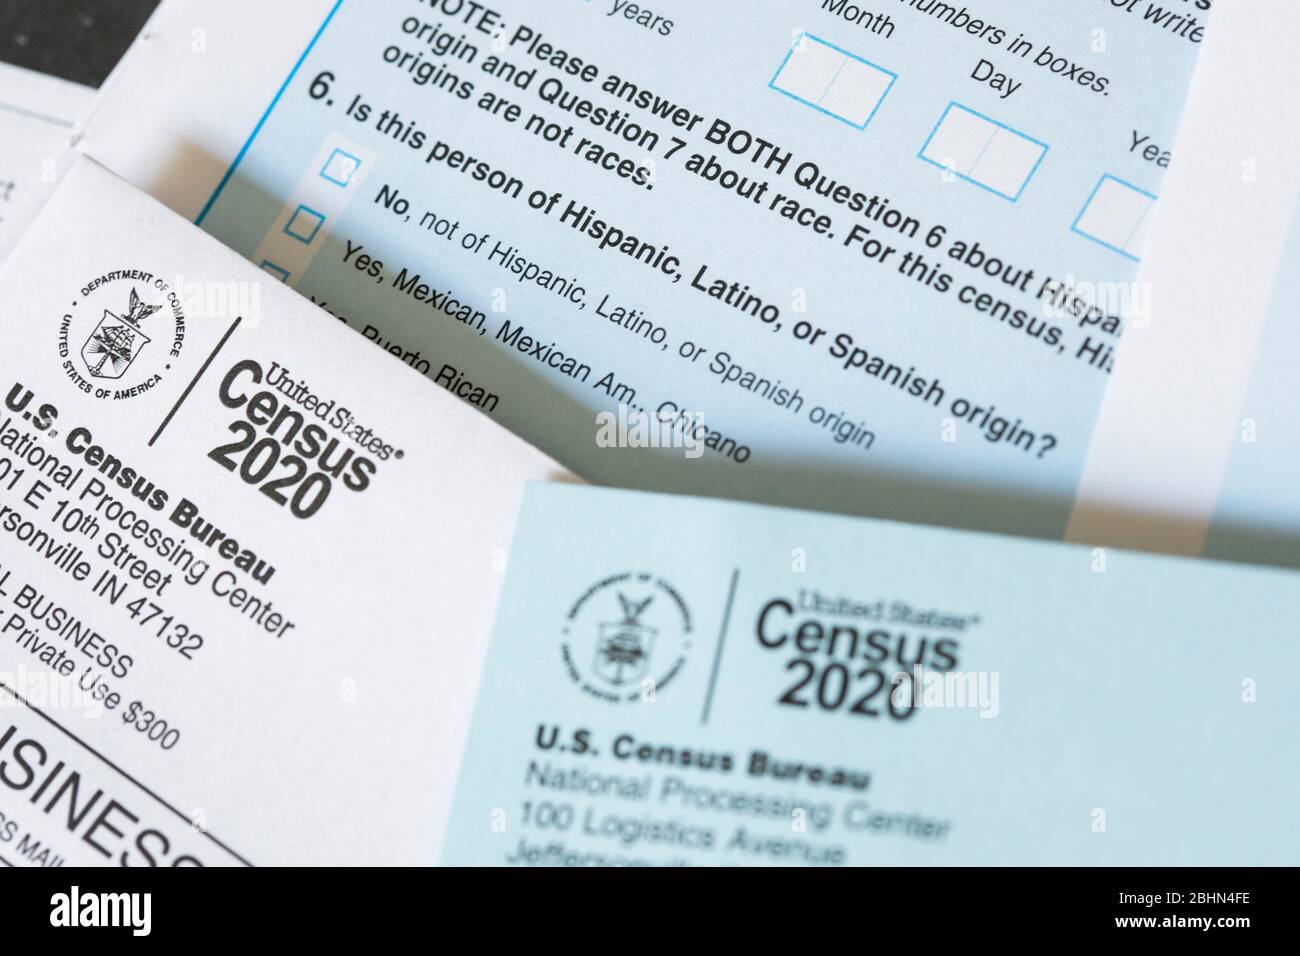 Une photographie de la question du questionnaire du recensement de 2020 des États-Unis sur l'origine hispanique, latino-américaine ou espagnole. Banque D'Images